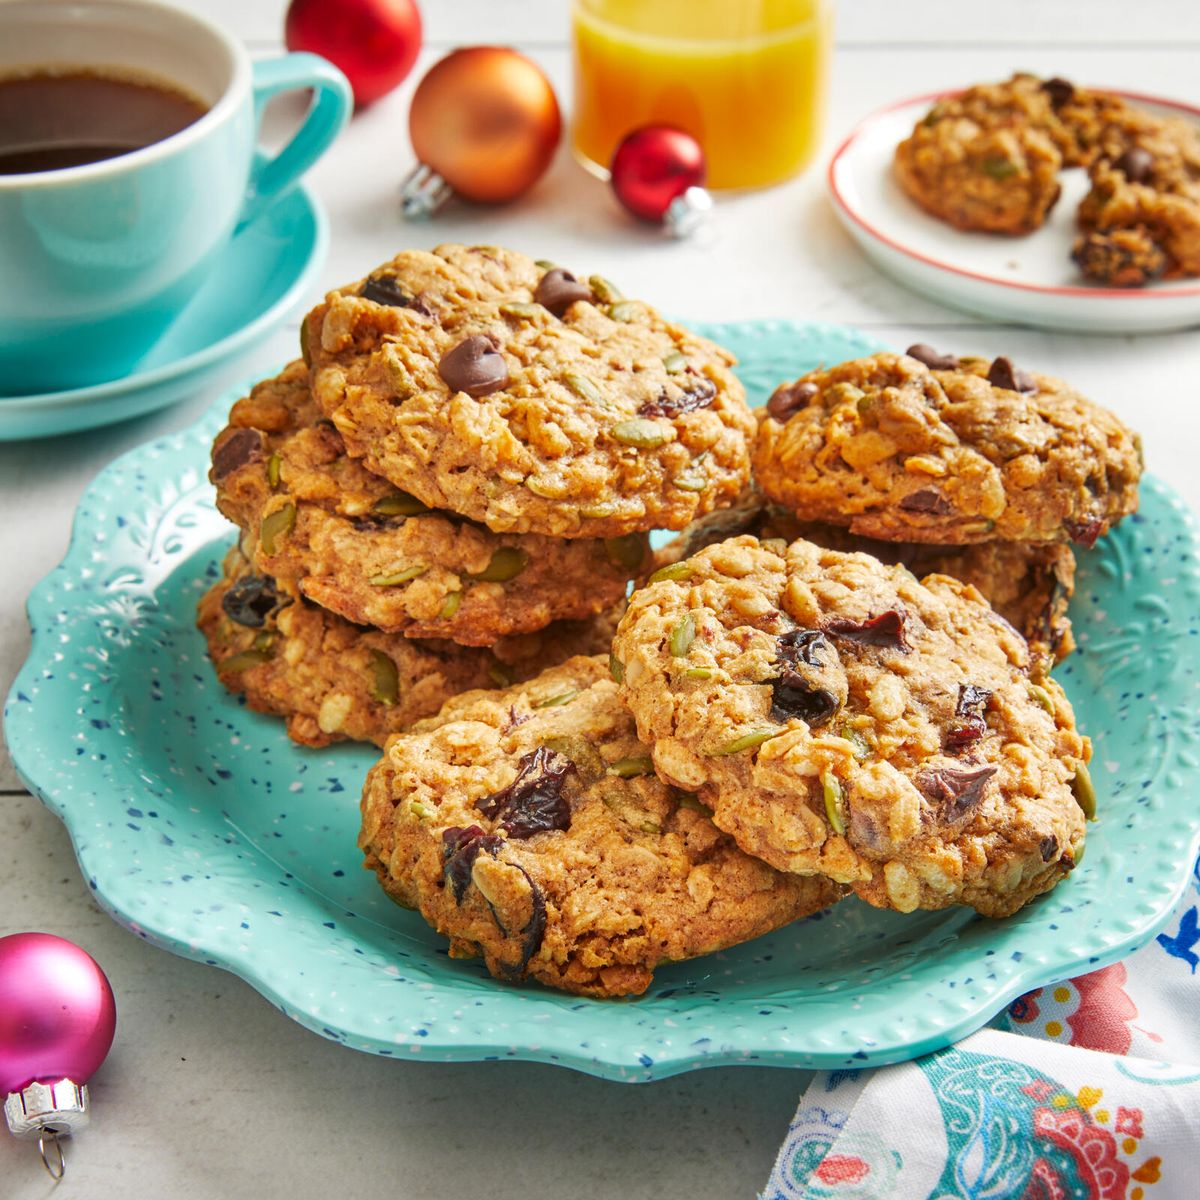 the pioneer woman's breakfast cookies recipe